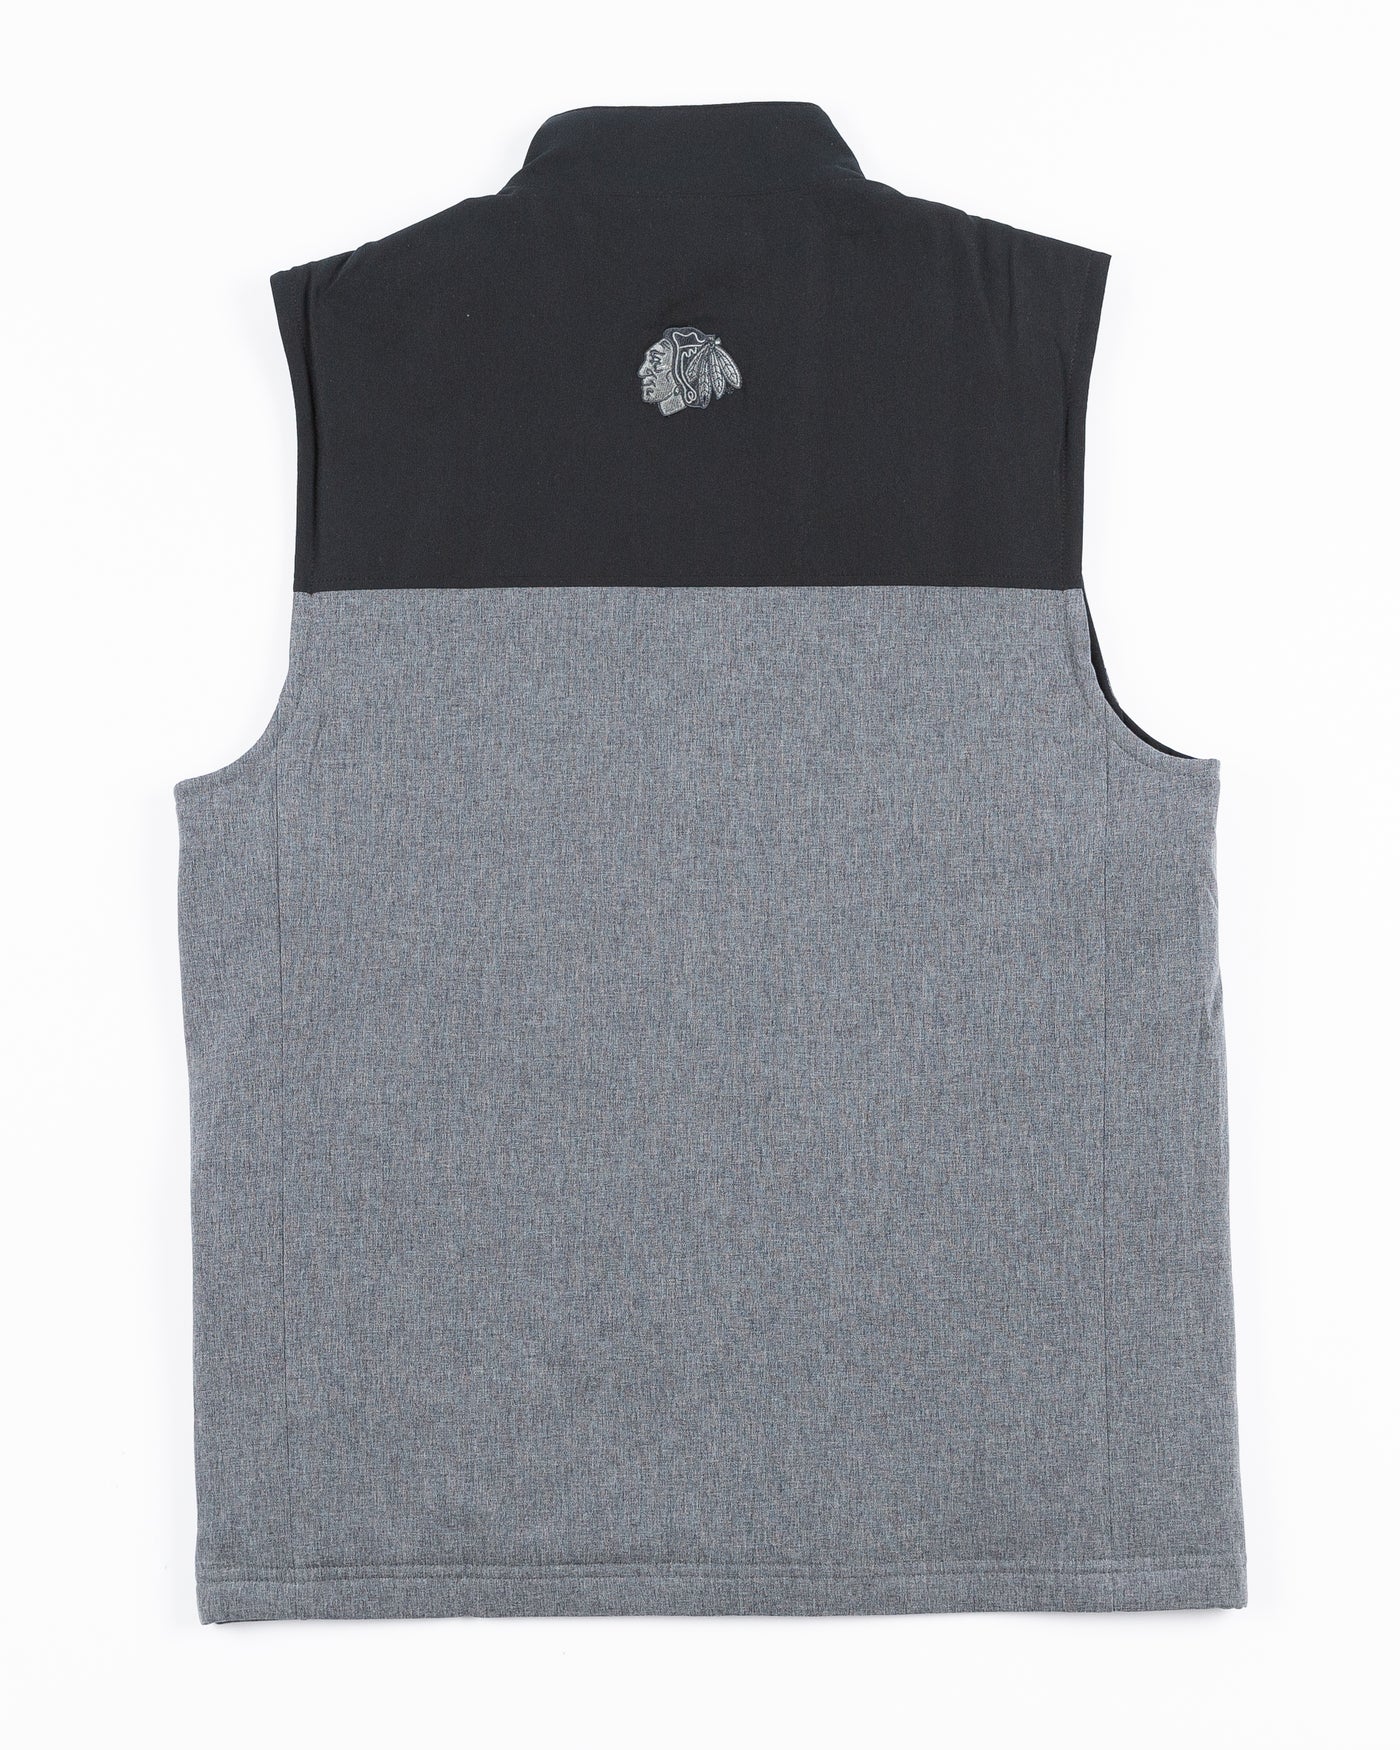 two tone black and grey TravisMathew vest with Chicago Blackhawks primary logo embroidered on back yoke - back lay flat